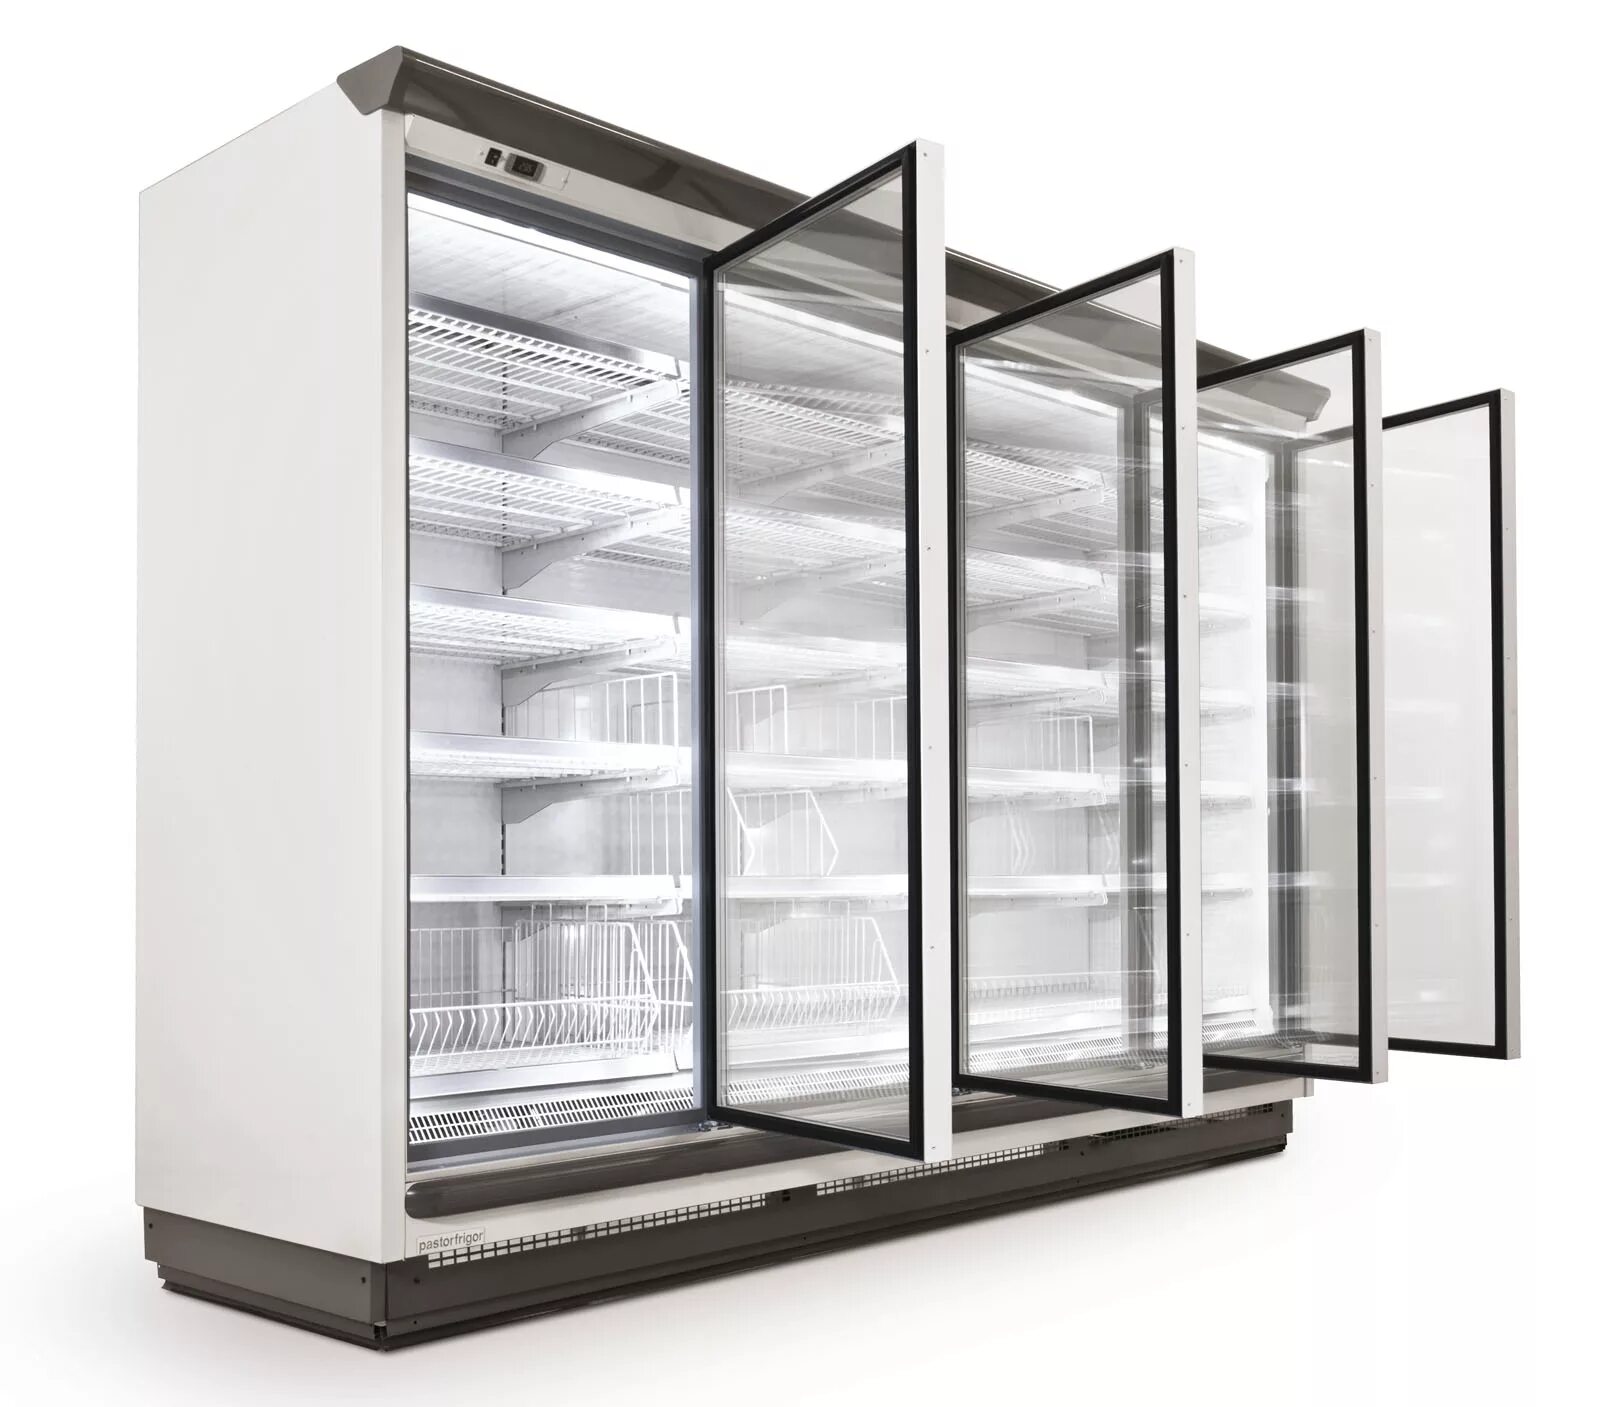 Витрина морозильная горизонтальная useful tradevolum,100, 3l. Холодильная камера Промышленная Frigo cool. Ice pod Level 3 модульная морозильная витрина. Витринная холодильная камера вертикальная Cooleq. Холодильник витрина для магазина